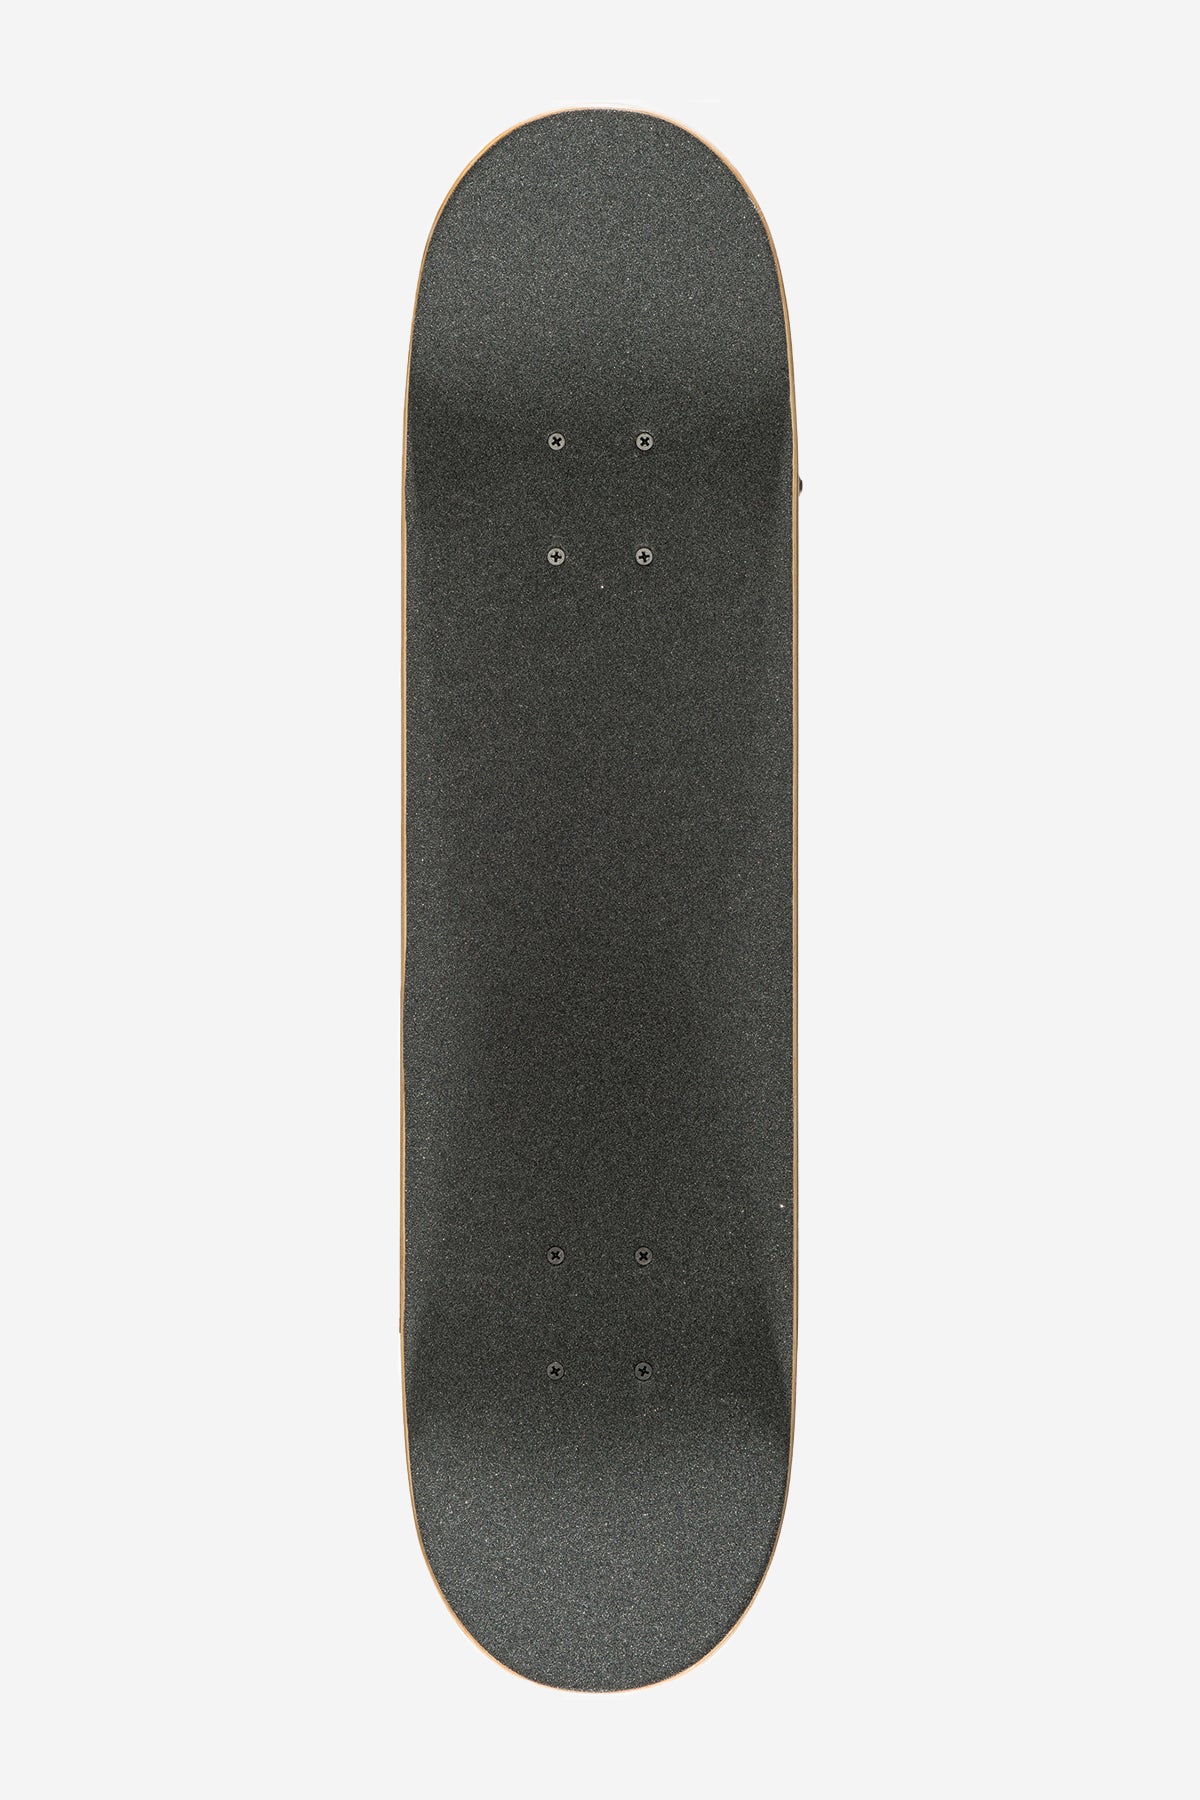 Globe - Por Vida Mid - Brown/Black - 7.6" Bambini Completo Skateboard